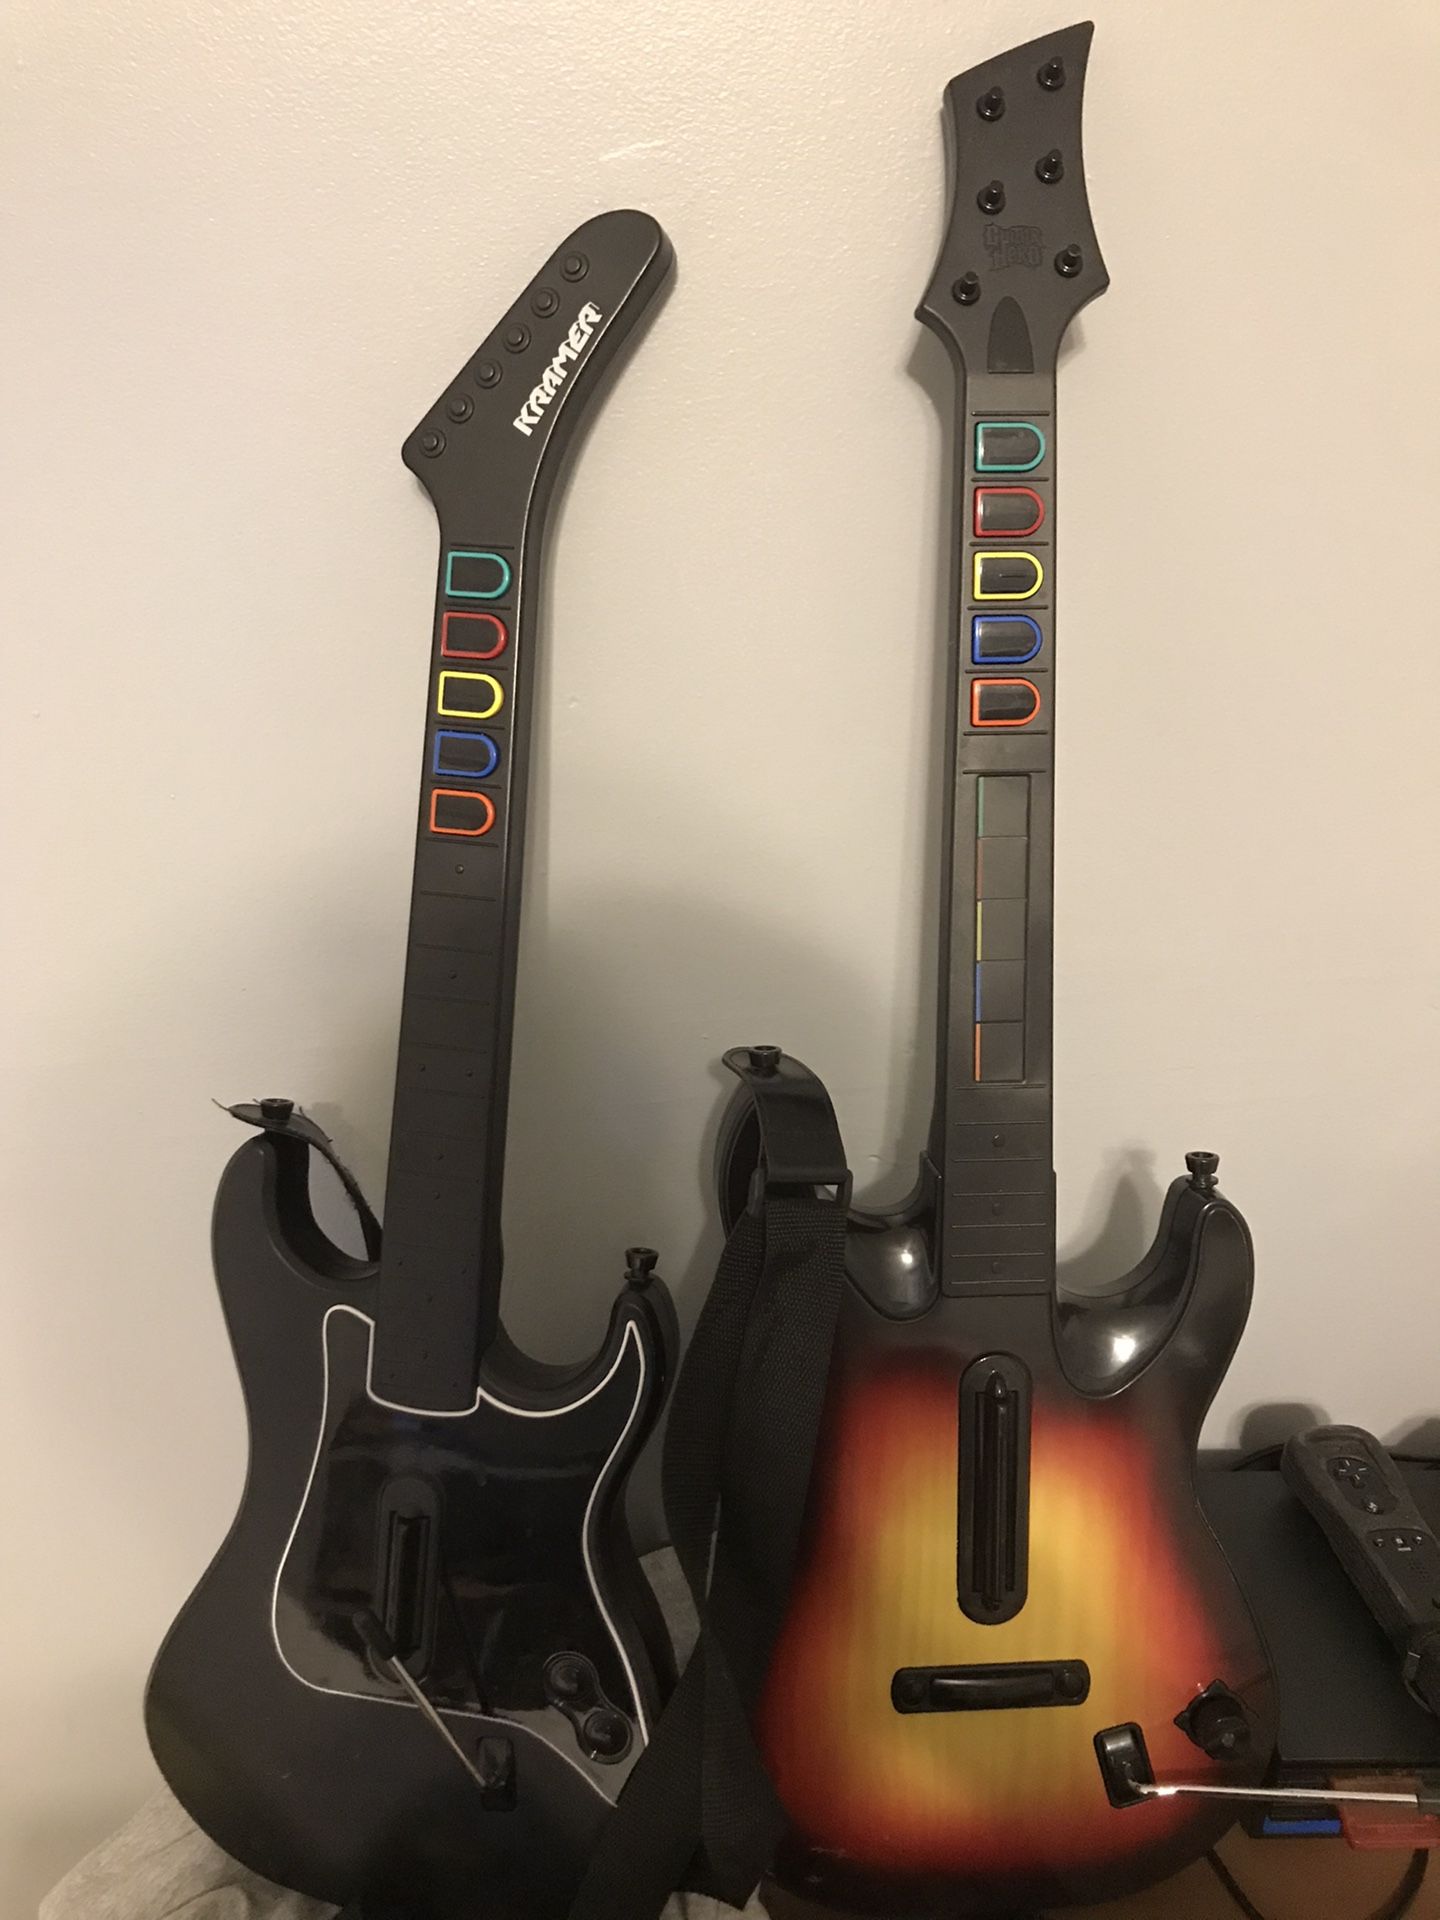 Guitar Hero Guitars 